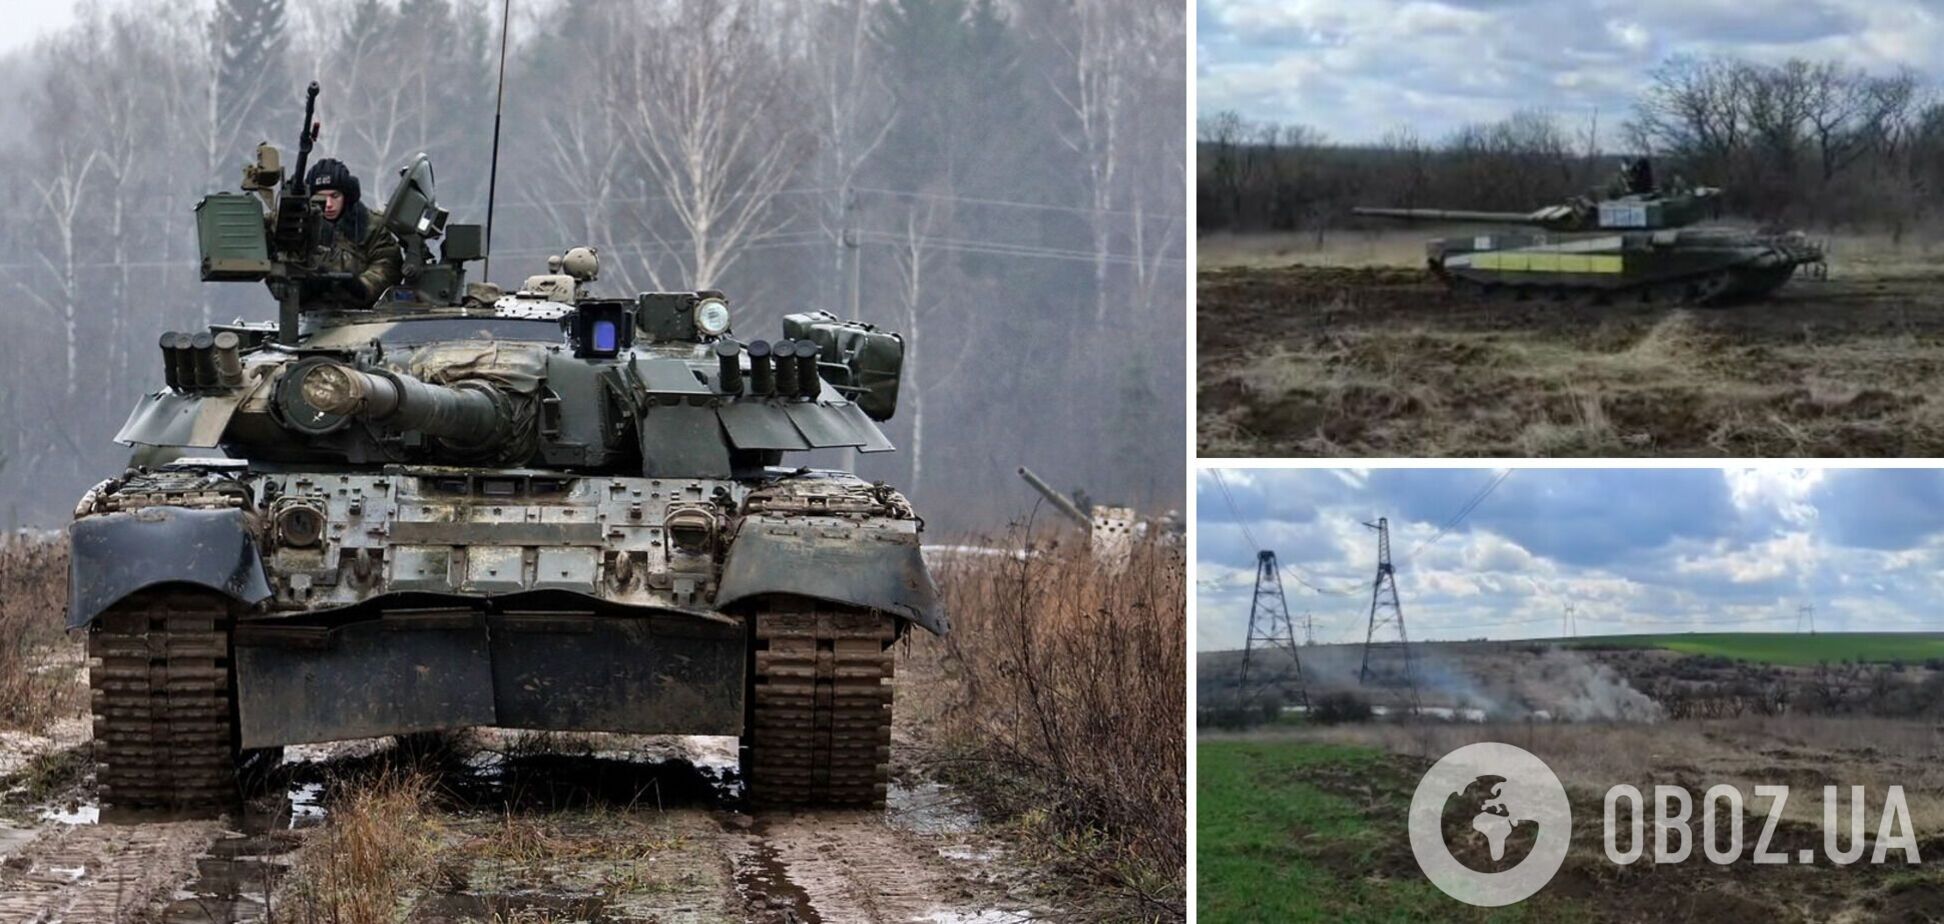 Українські захисники захопили танк окупантів: тепер його використовують у війні проти ворога. Відео